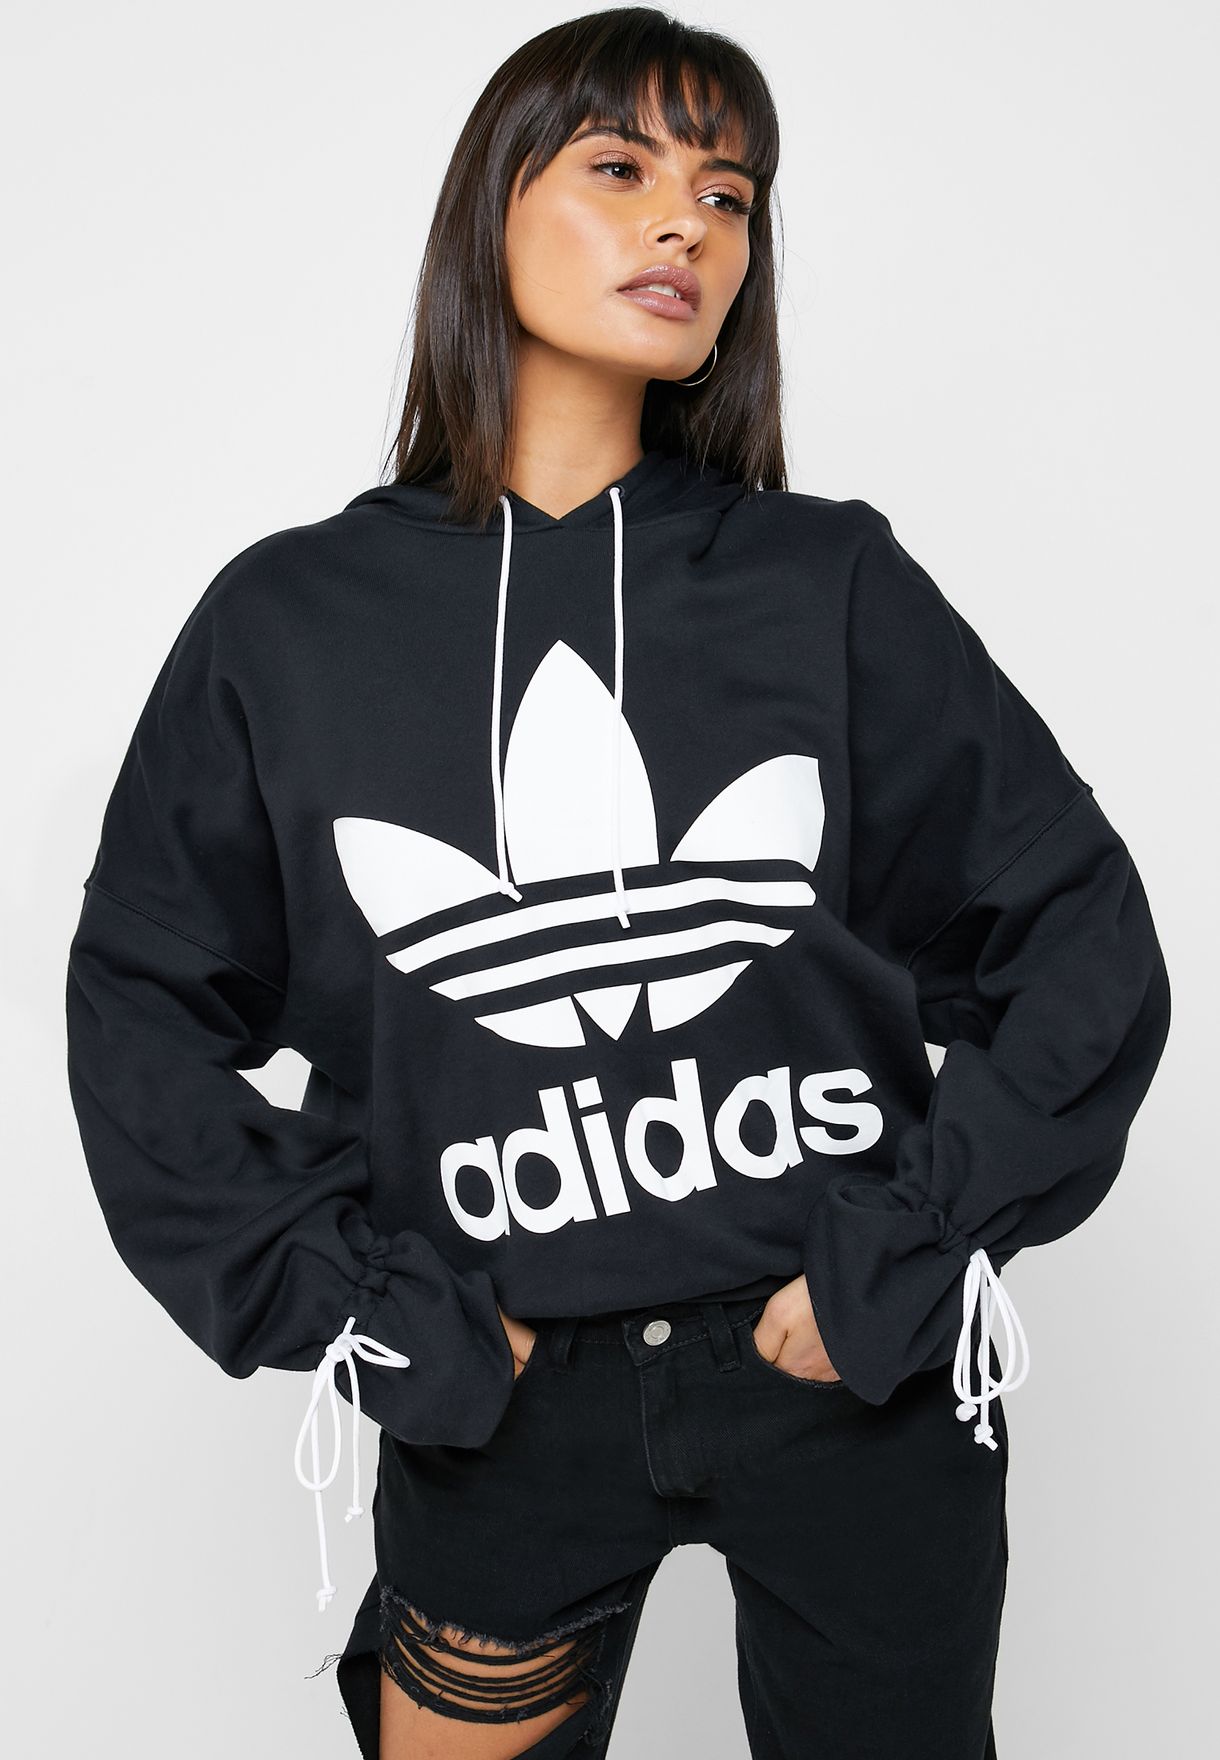 adidas trefoil hoodie women's black